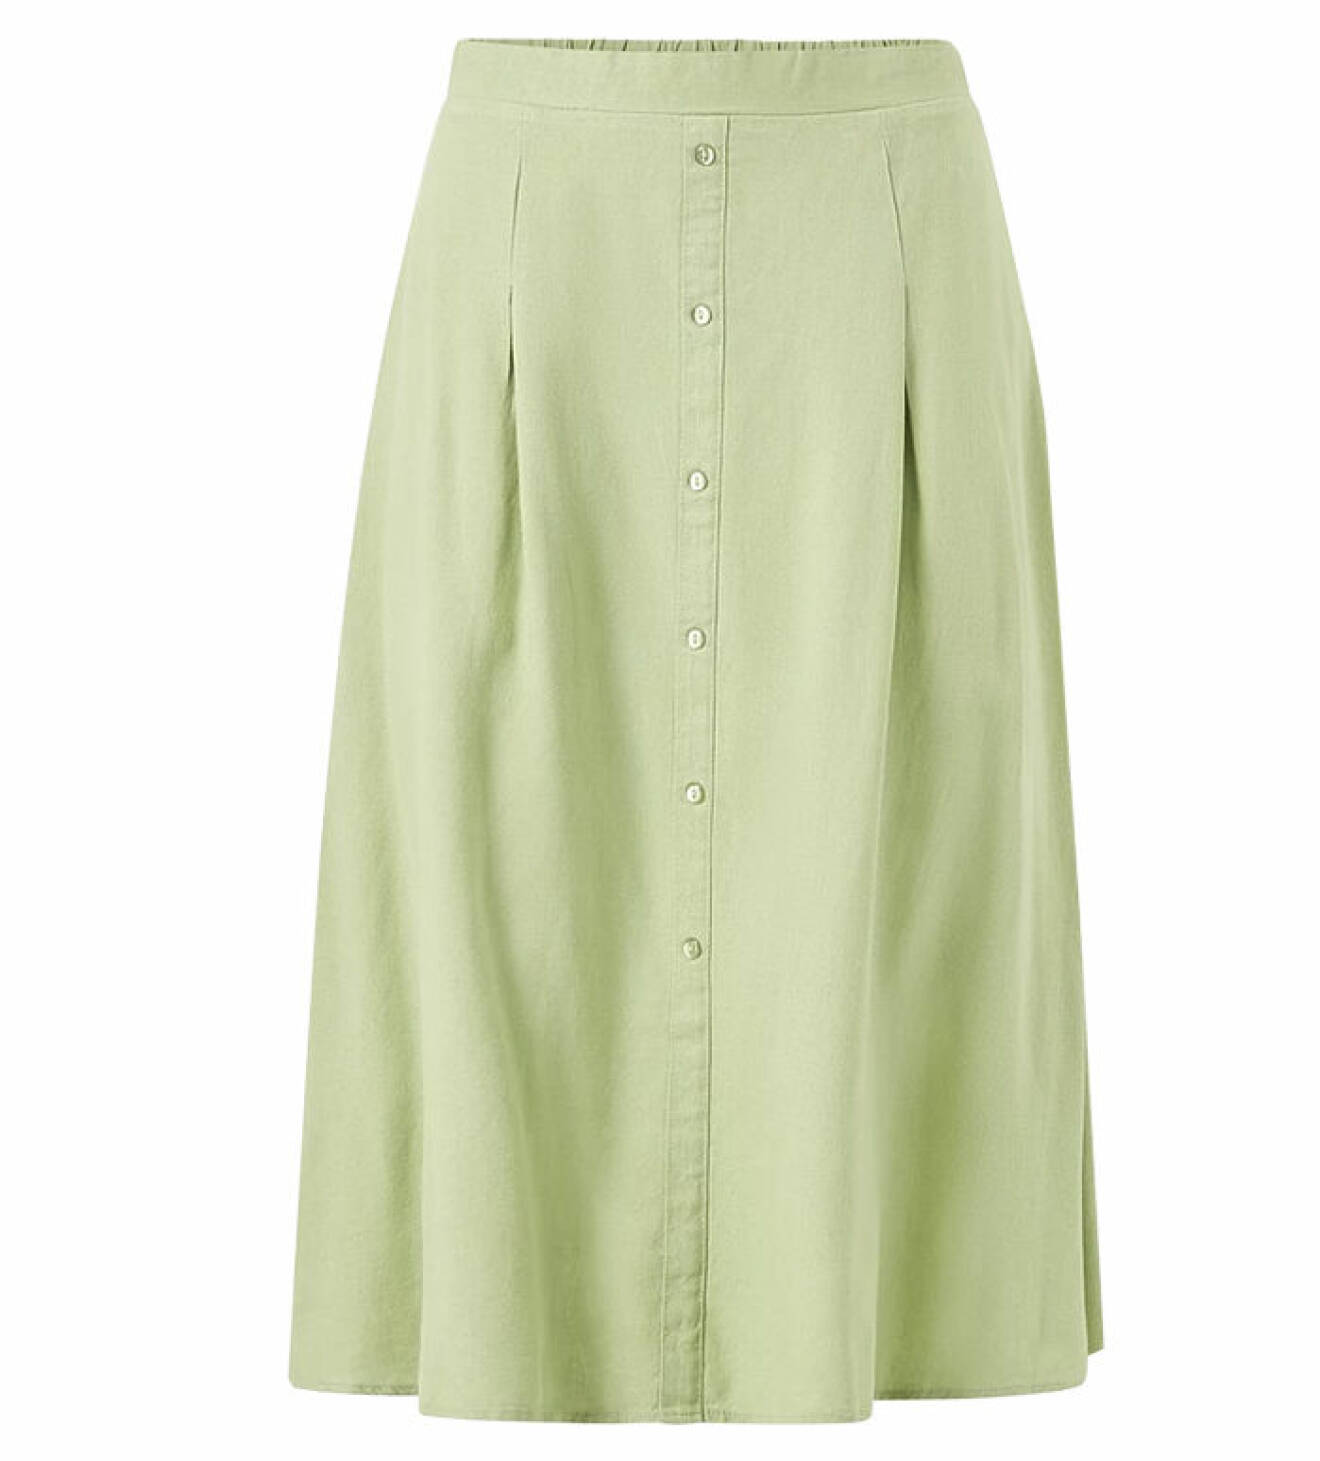 Grön kjol men knappar fram från Ellos.